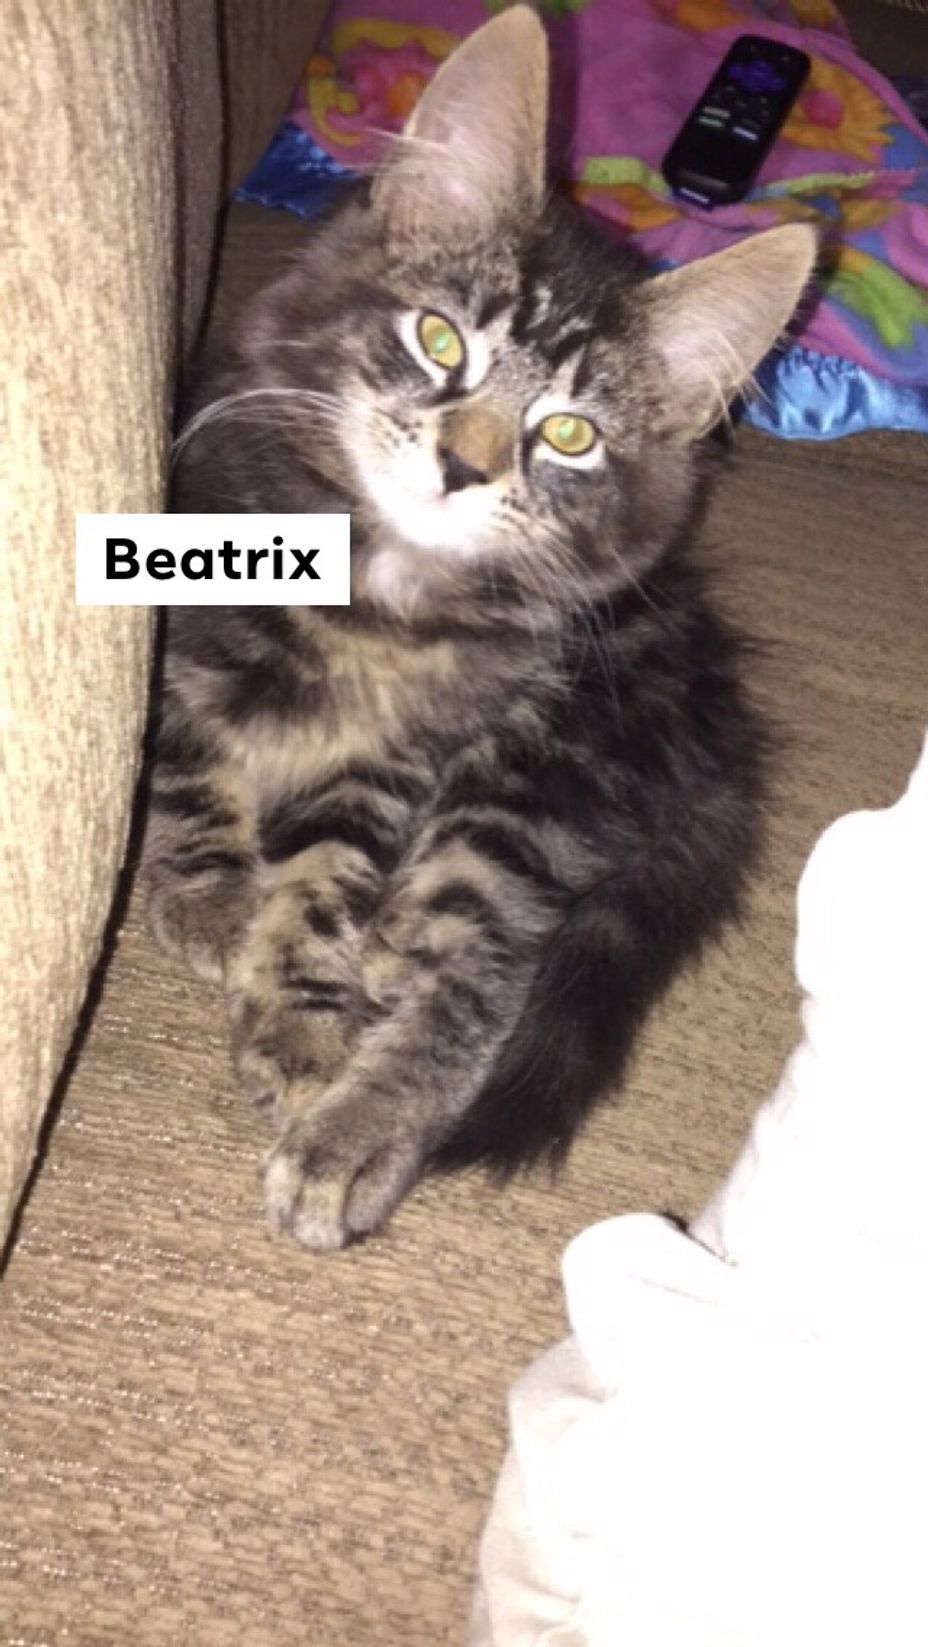 <p>My cat Beatrix <a class="tm-topic-link ugc-topic" title="cat" href="/topic/cat/" data-id="5b23ce6b00553f33fe98f343" data-name="cat" aria-label="hashtag cat">#Cat</a> <a class="tm-topic-link ugc-topic" title="autism therapy" href="/topic/autism-therapy/" data-id="5b23ce6300553f33fe98daa6" data-name="autism therapy" aria-label="hashtag autism therapy">#AutismTherapy</a></p>